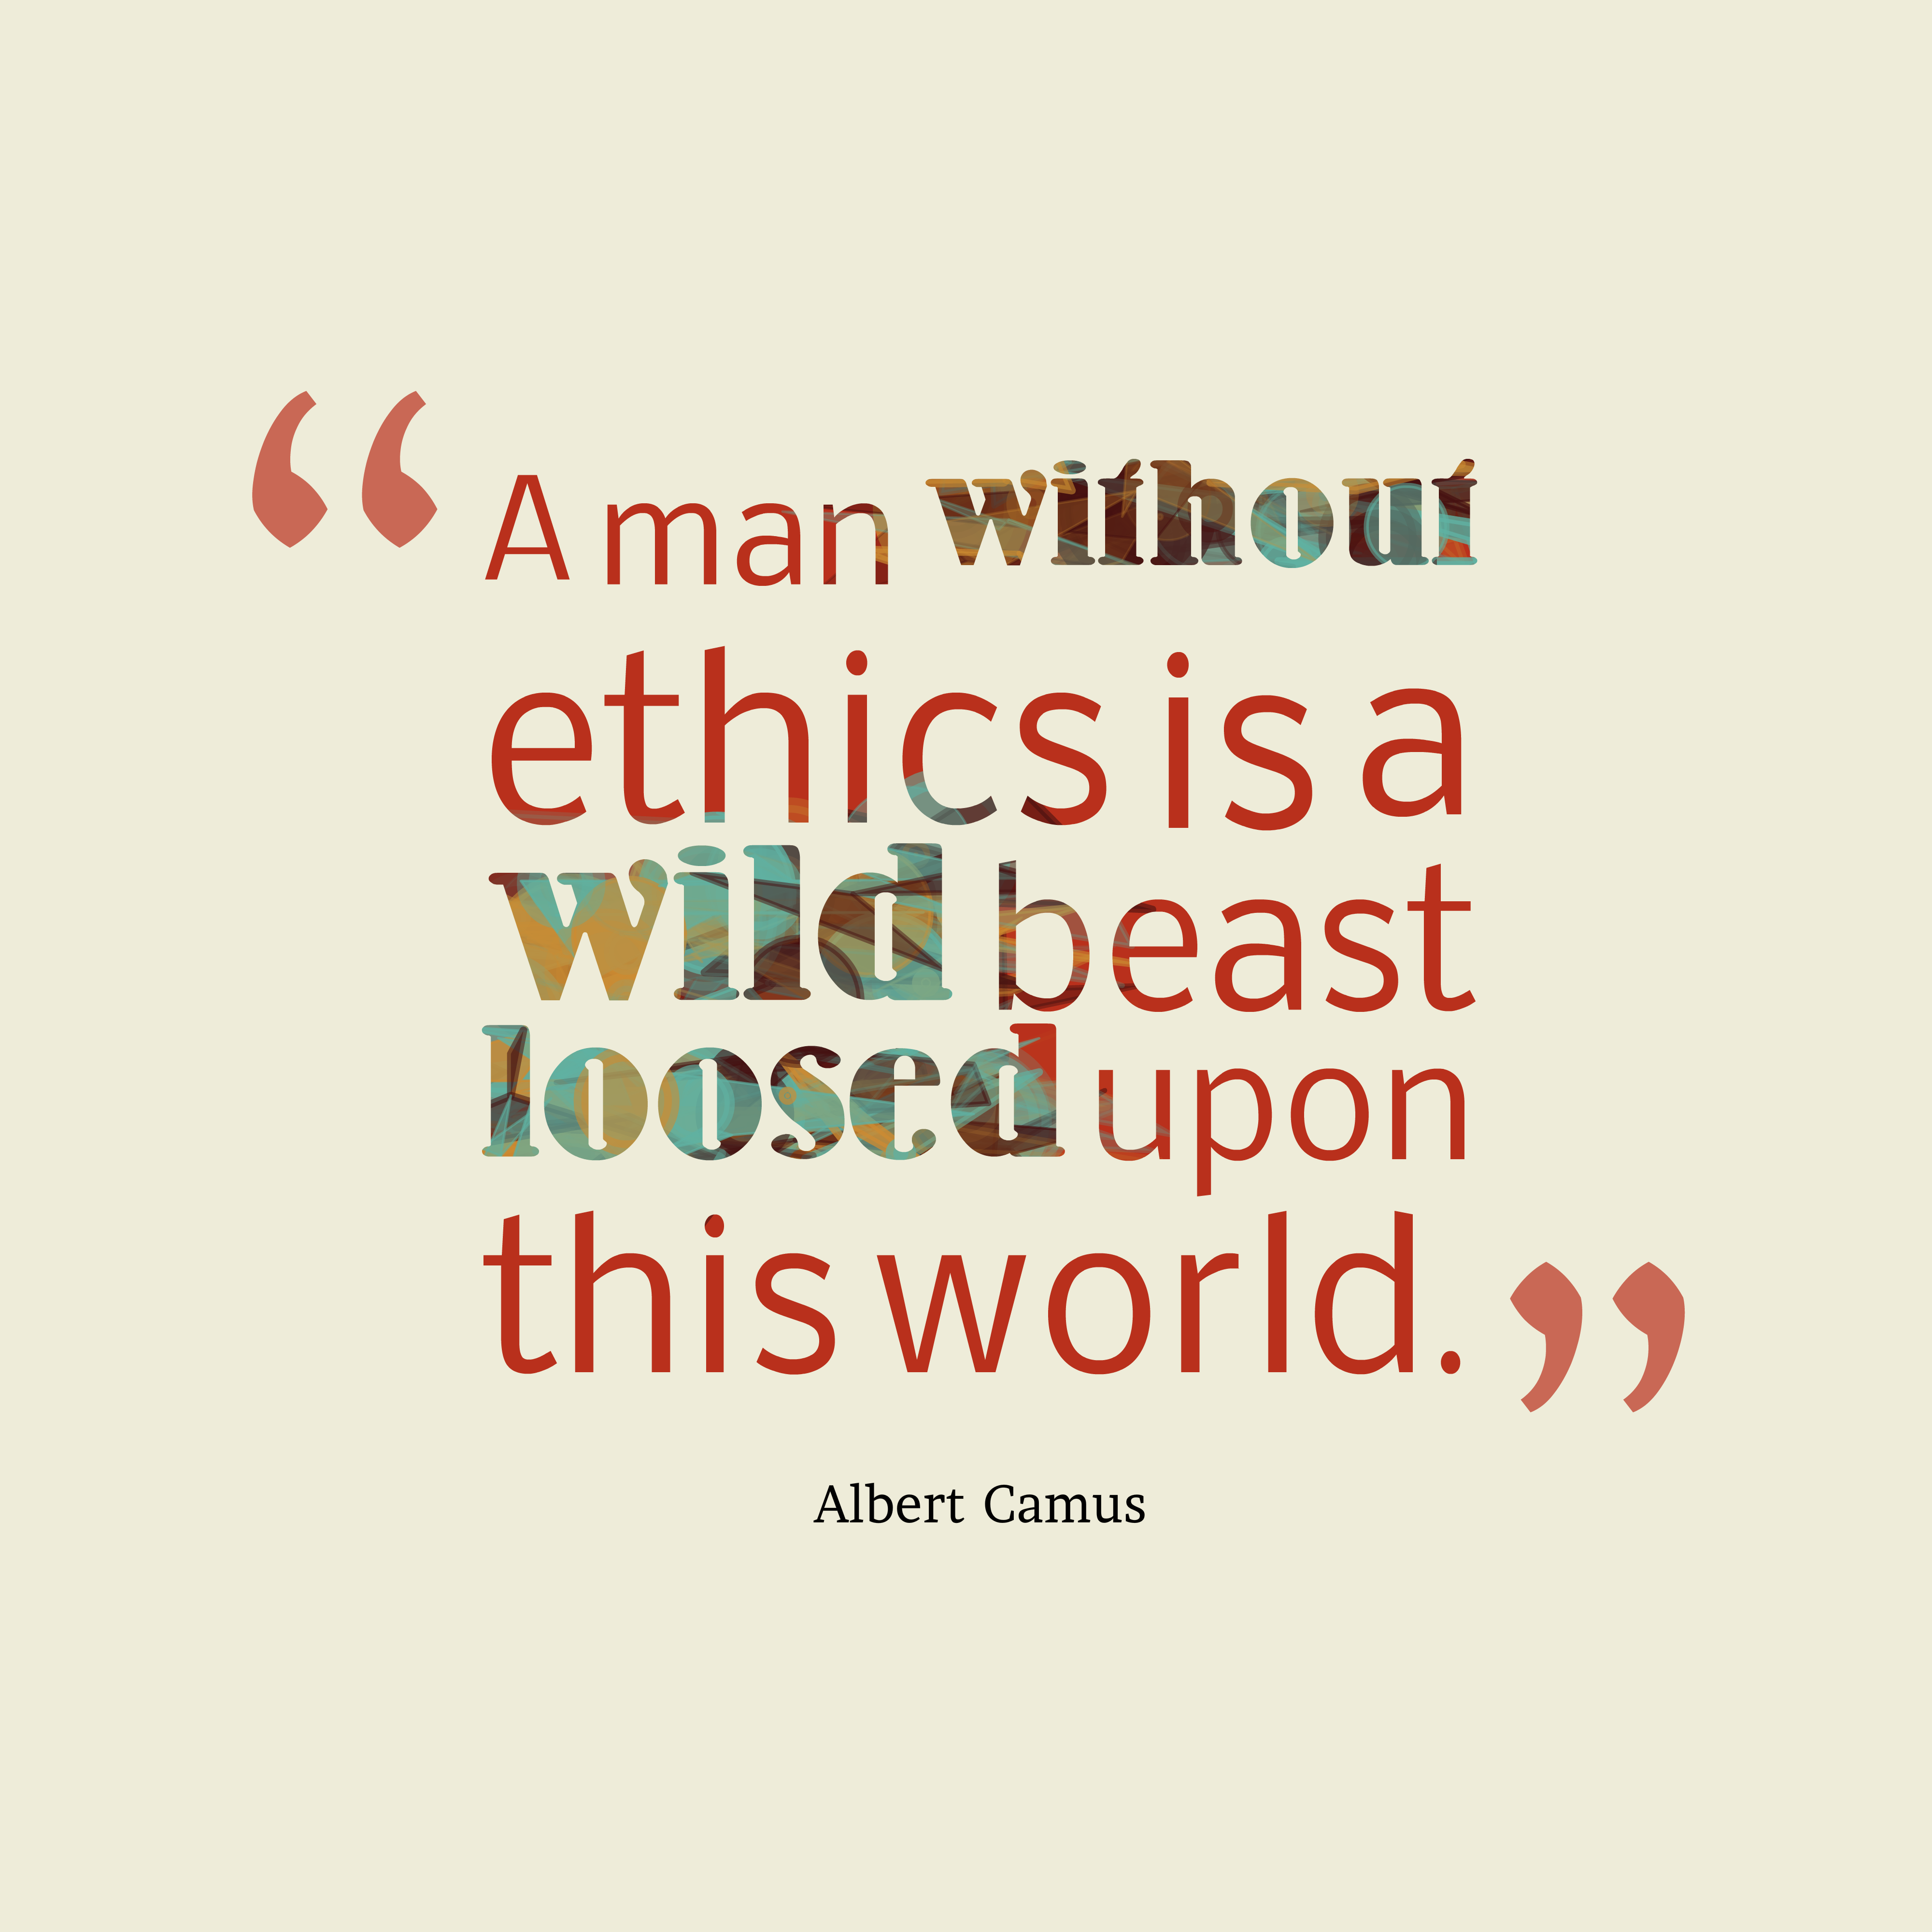 Ethics Quotes Wallpaper. QuotesGramquotesgram.com